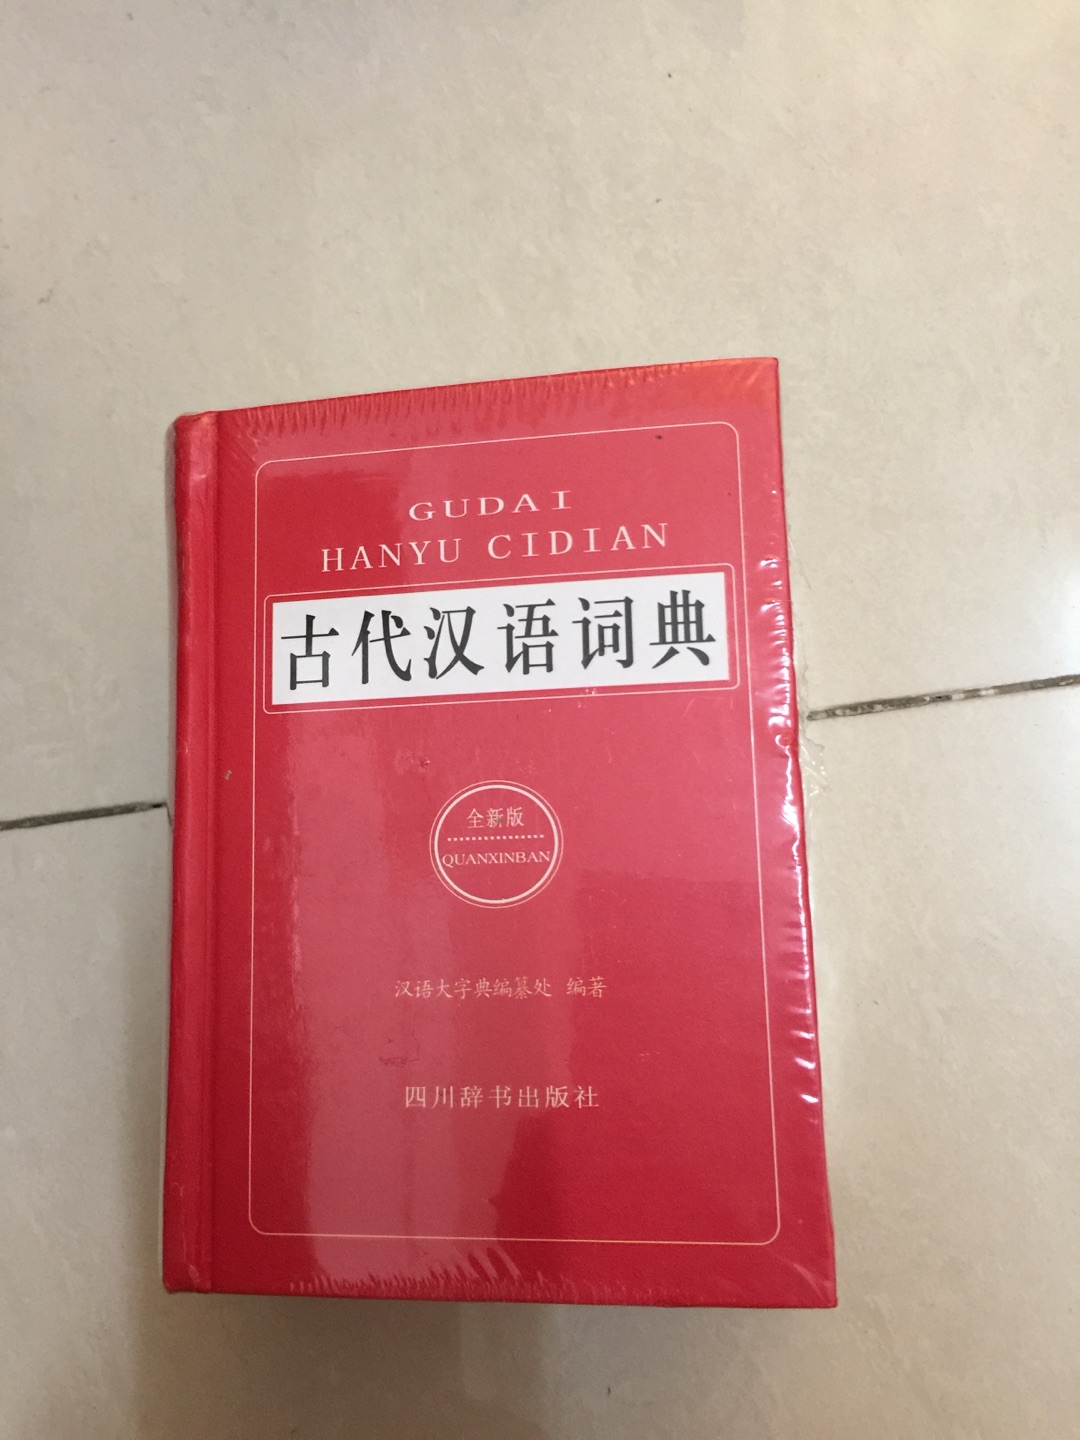 618入手中华书局出版的点校本《二十四史》后买的《古代汉语词典》。小开本厚厚的，为了好好的读二十四史，先从基础学起。可能最开始进度比较慢，但是读了十本二十本三十本书后我相信会越来越熟练的！